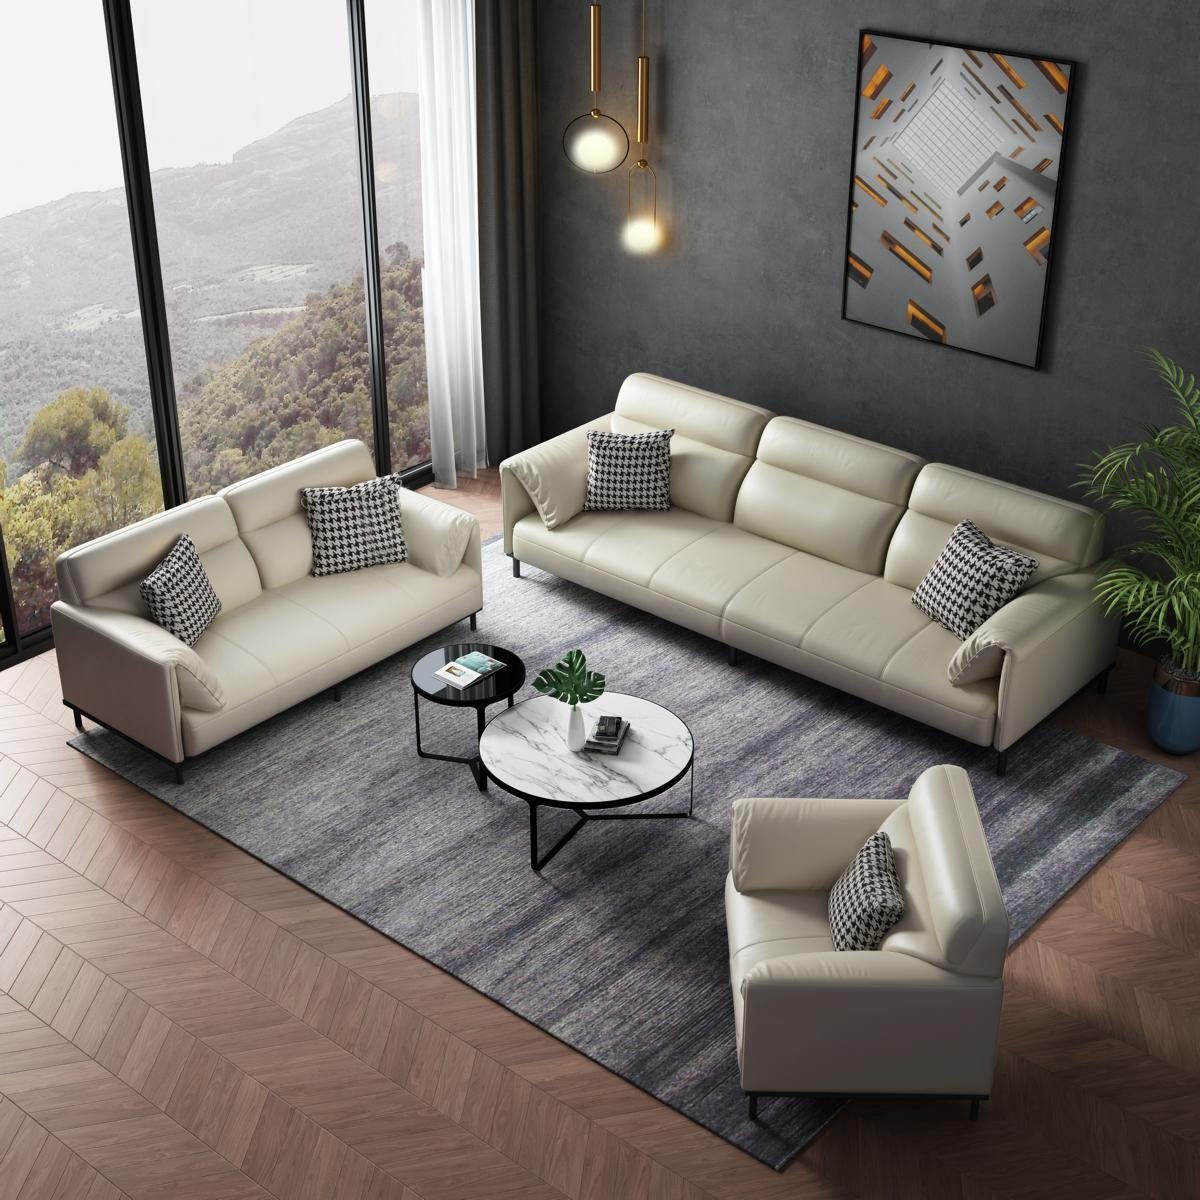 JVmoebel Sofa Luxuriöse Wohnzimmer Sofagarnitur 3+2+1 Set Garnitur Leder, Made in Europe | Alle Sofas